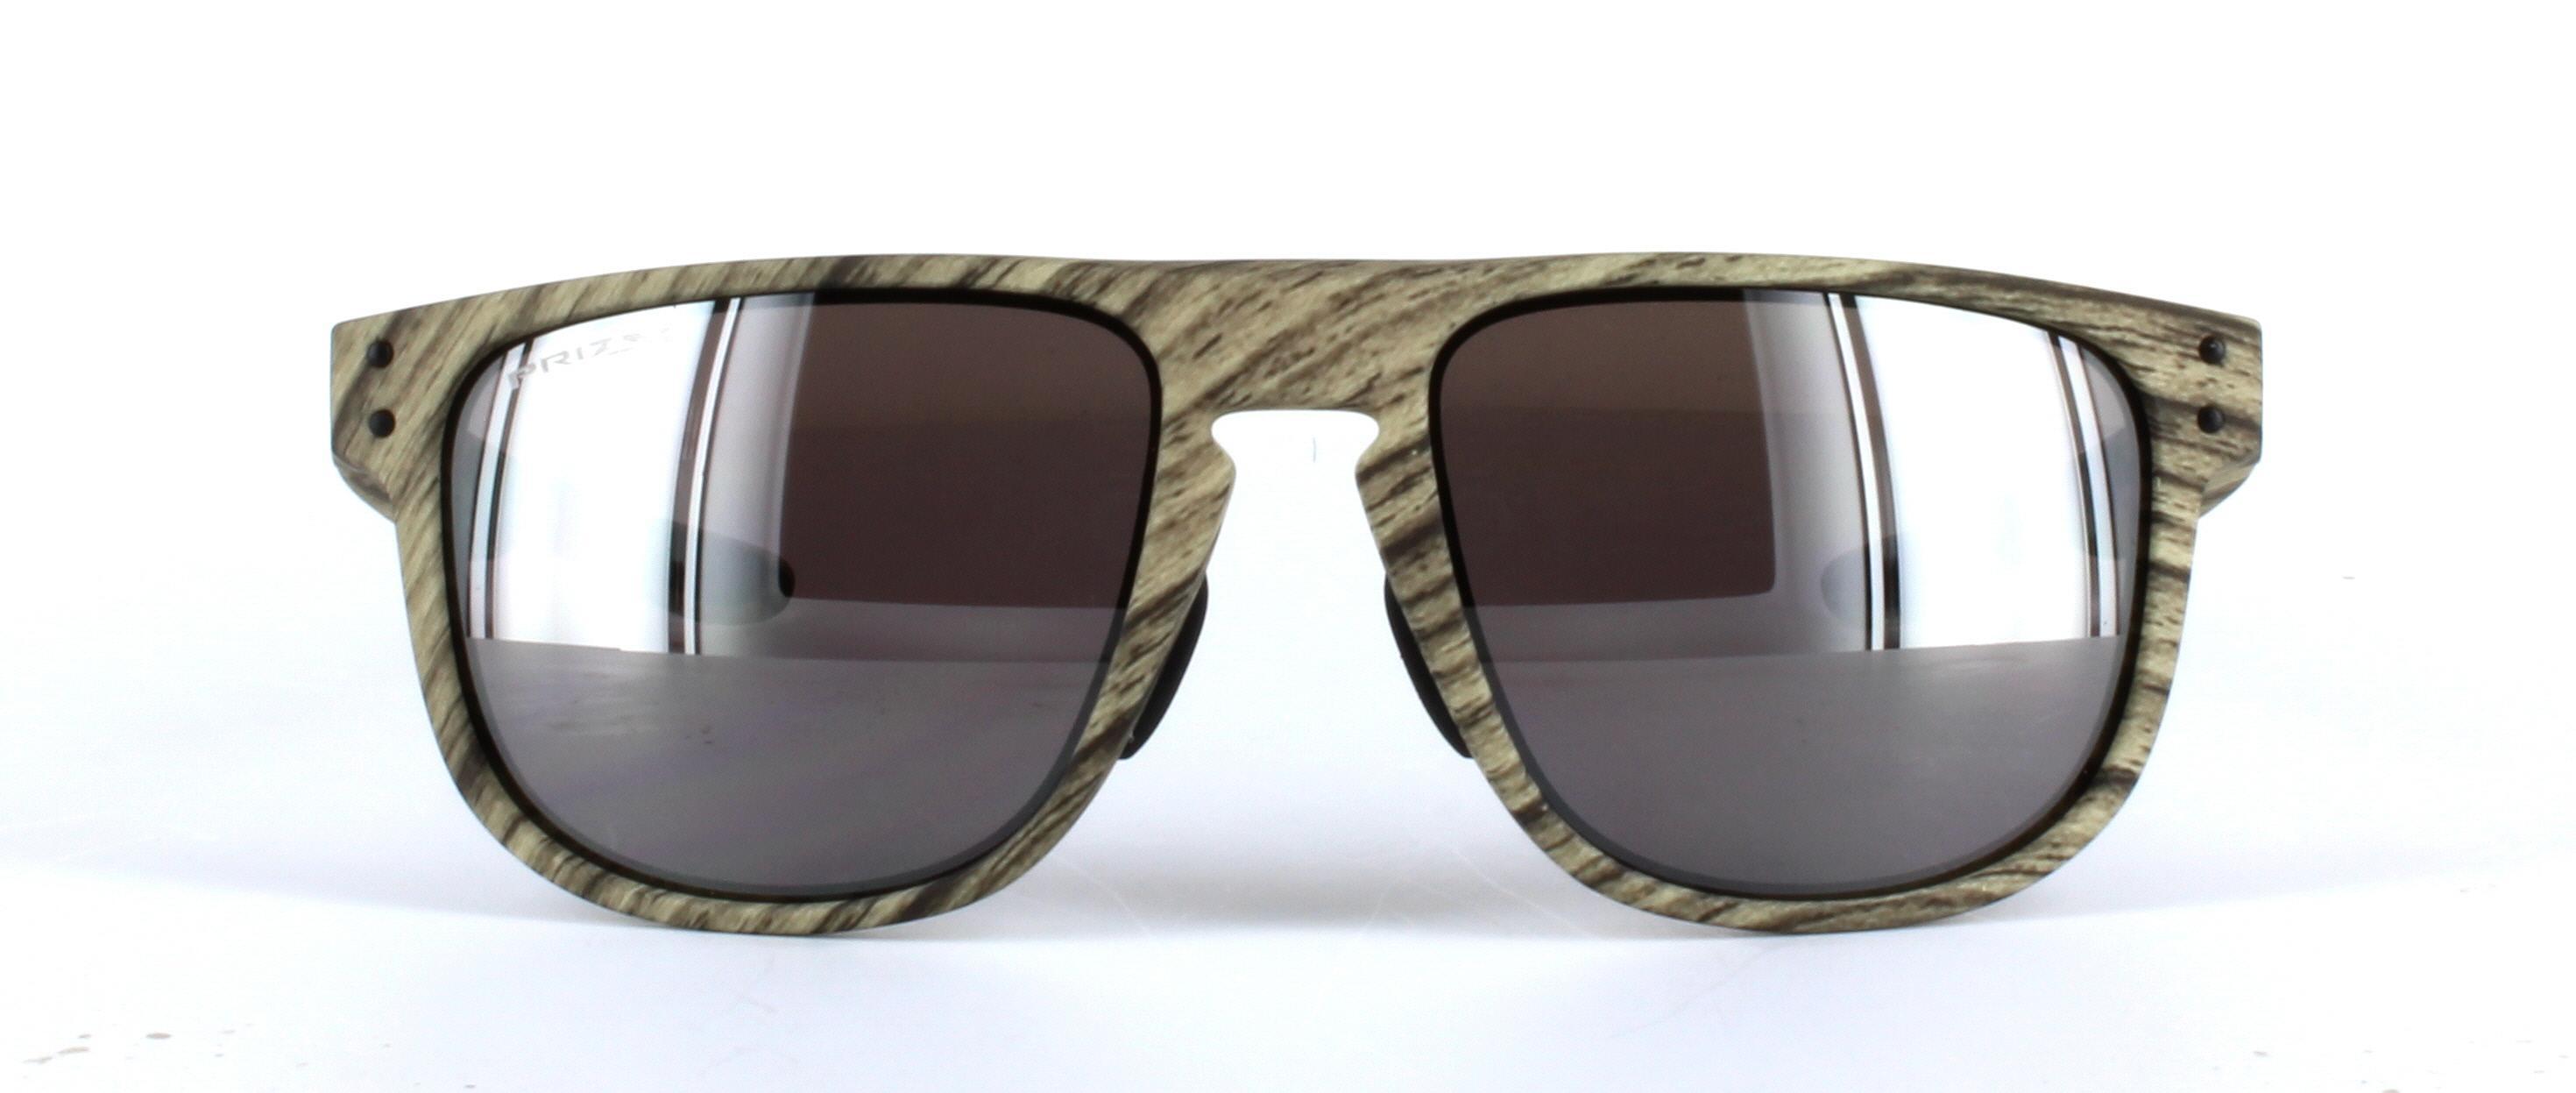 Oakley (O9379) Light Brown Full Rim Plastic Prescription Sunglasses - Image View 5